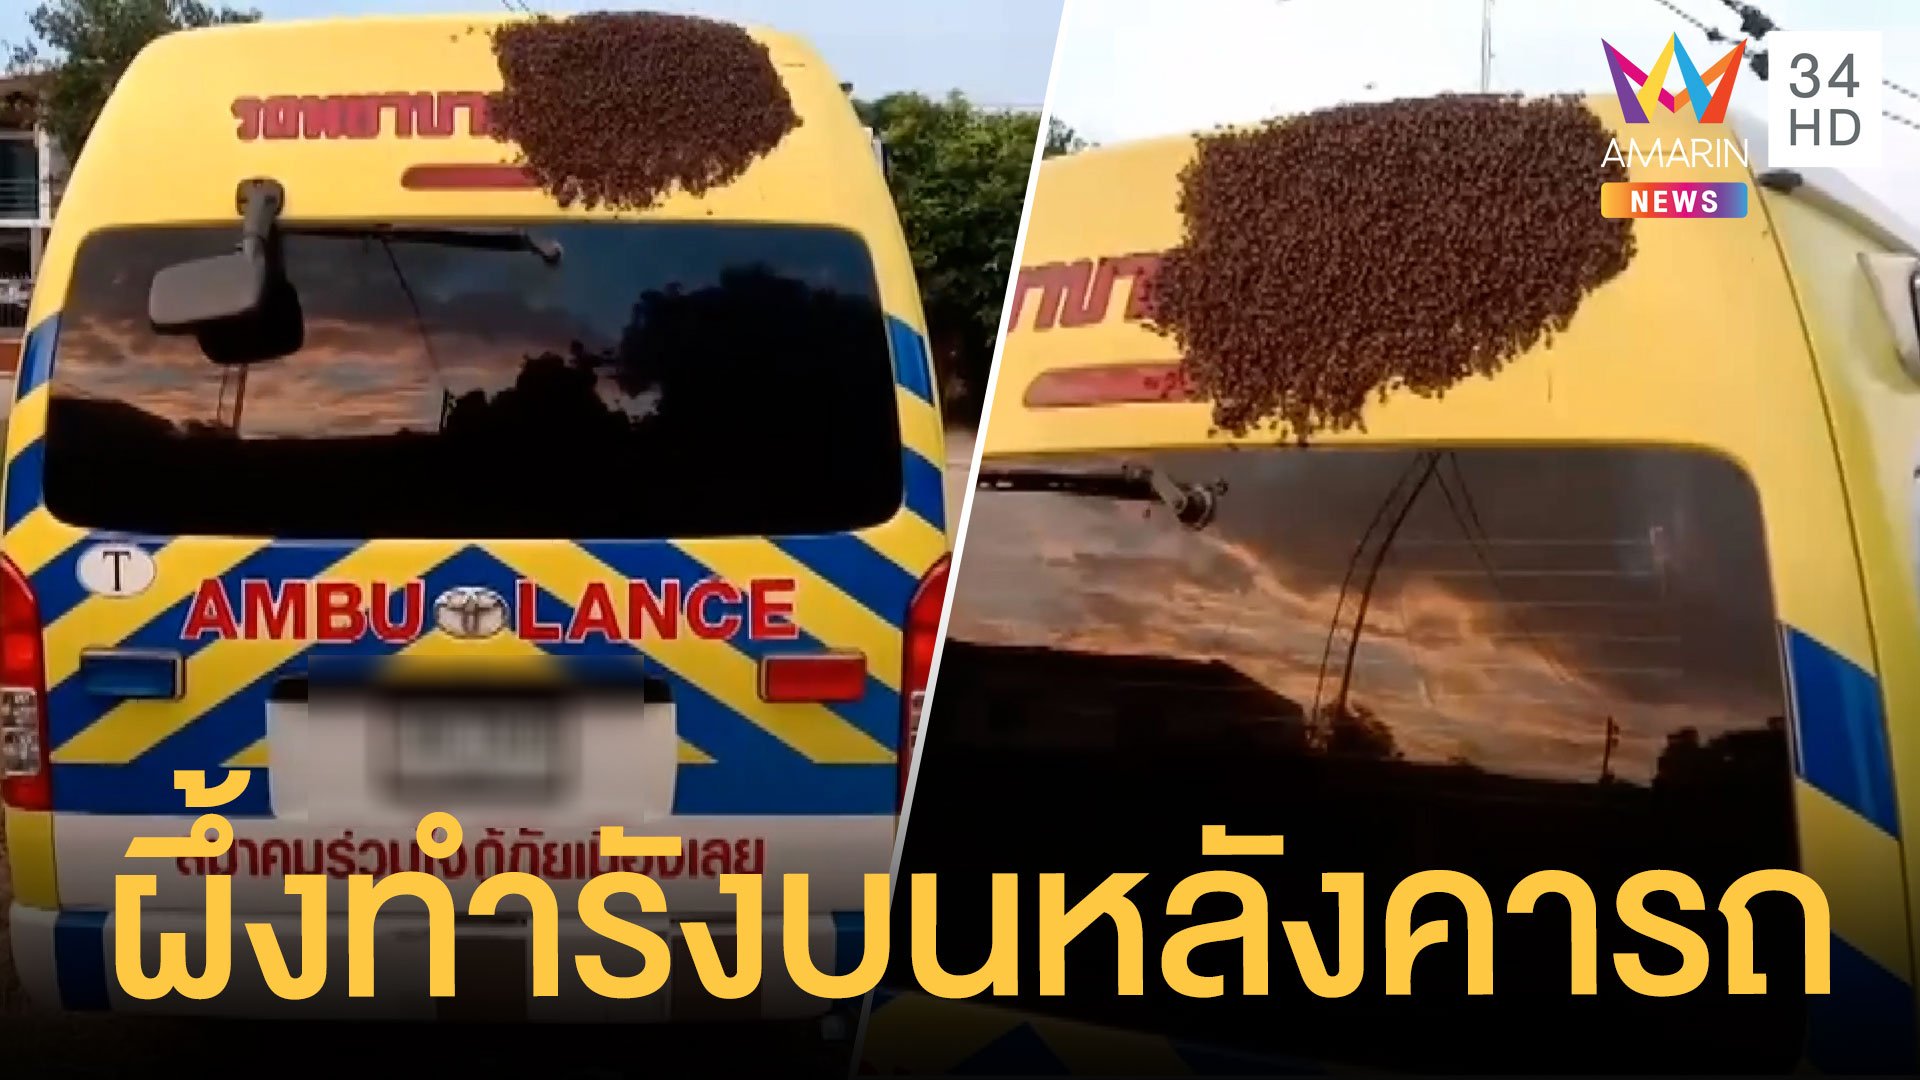 จอดรถอยู่ดีดี มาอีกทีผึ้งทำรังซะแล้ว ชาวบ้านแห่ส่องทะเบียนเพียบ | ข่าวอรุณอมรินทร์ | 14 พ.ค. 64 | AMARIN TVHD34